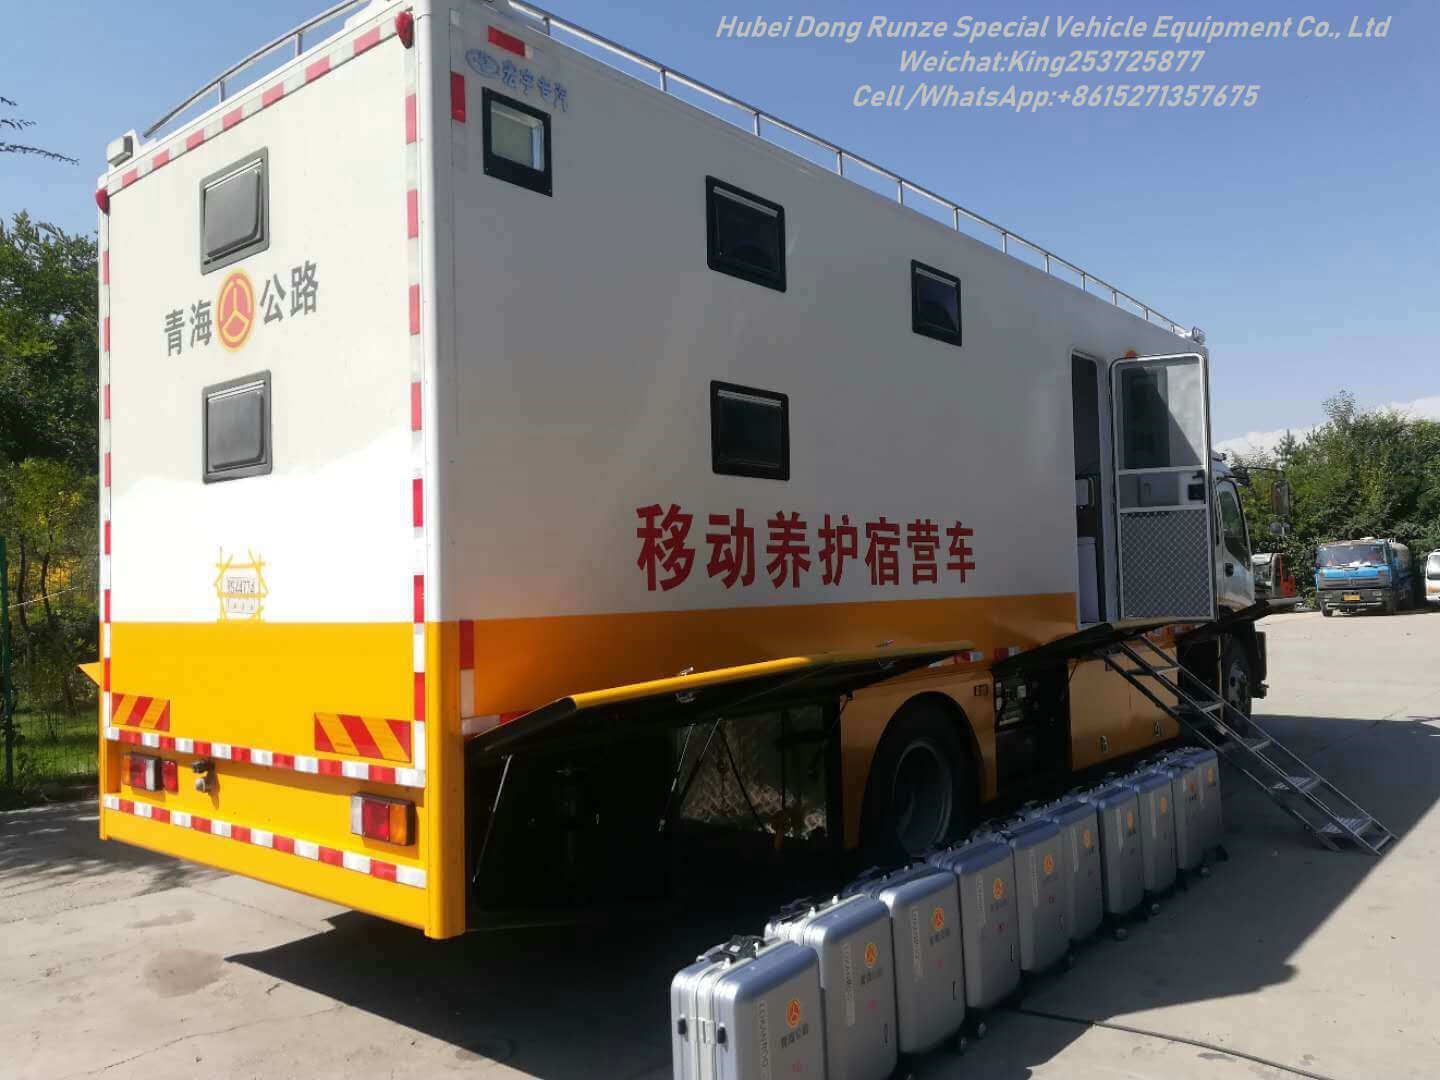 ISUZU FTR Outdoor Mobile Camping Truck 